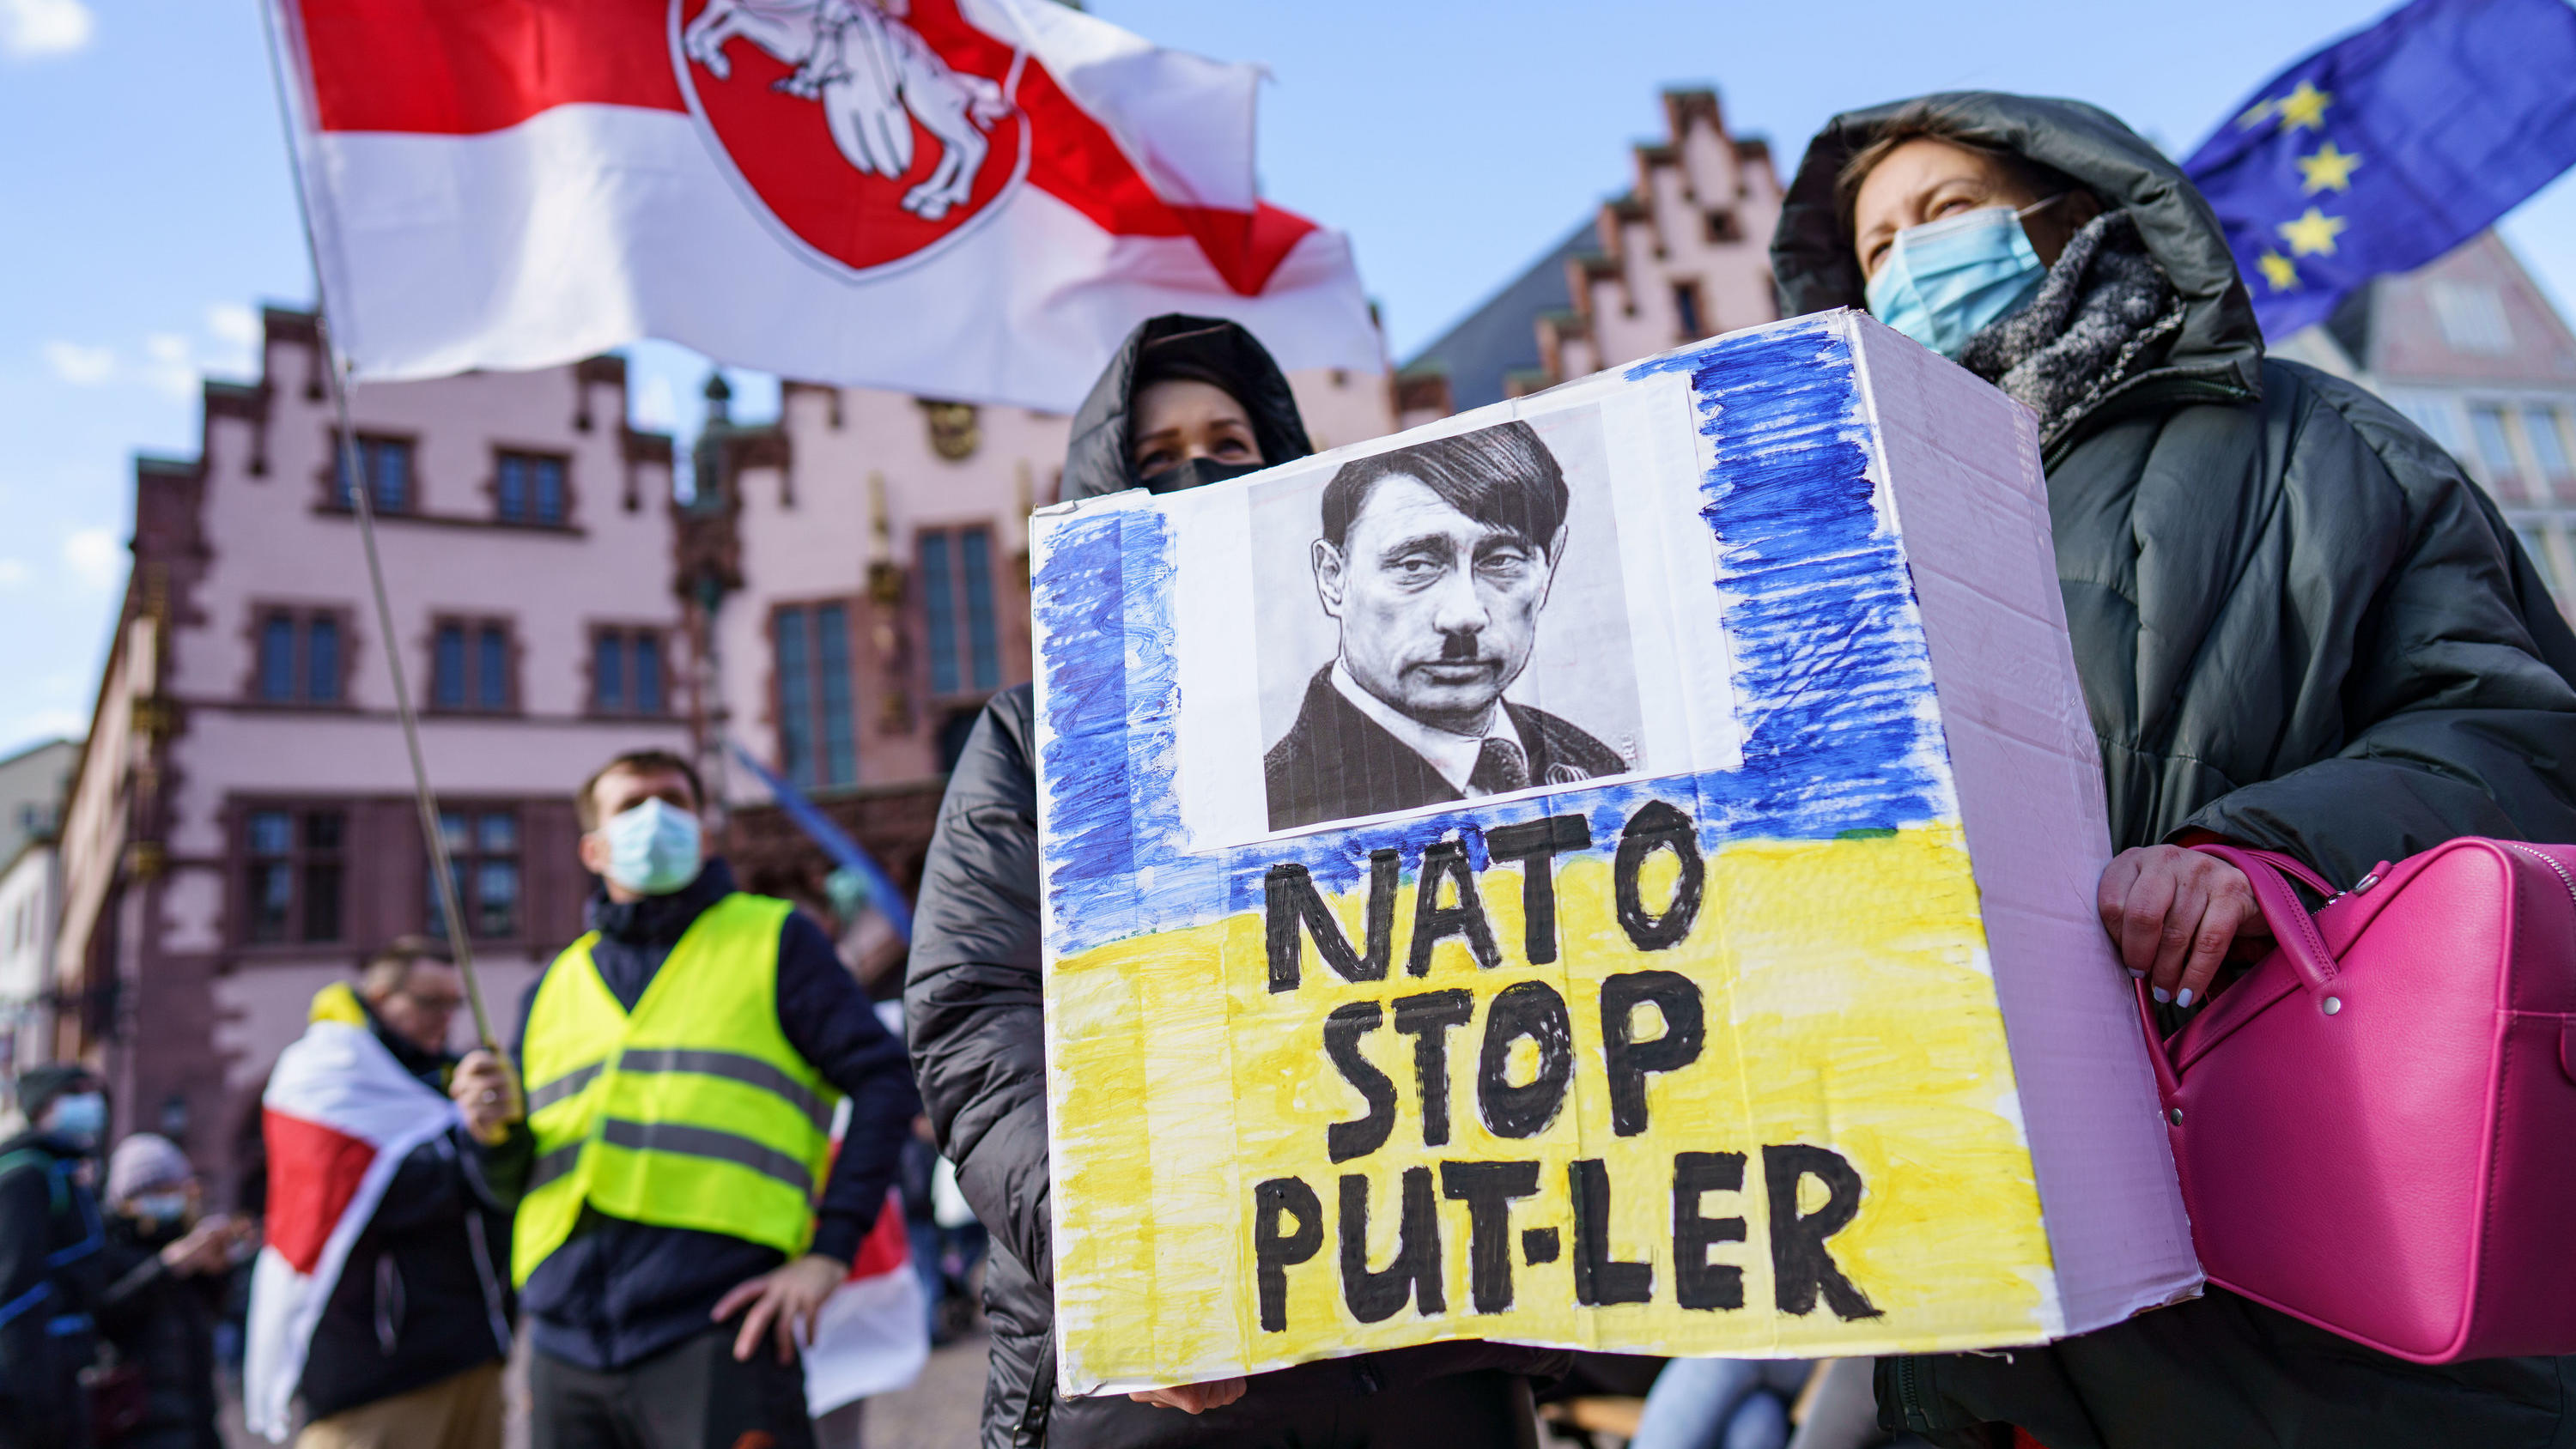 27.02.2022, Hessen, Frankfurt/Main: Demonstrantinnen halten ein Plakat mit der Aufschrift "Nato stop Put-ler" mit dem Bild eines Gesichts, das eine Mischung von Hitler und Putin darstellt, bei einer Kundgebung auf dem Römerberg für Frieden in der Ukr